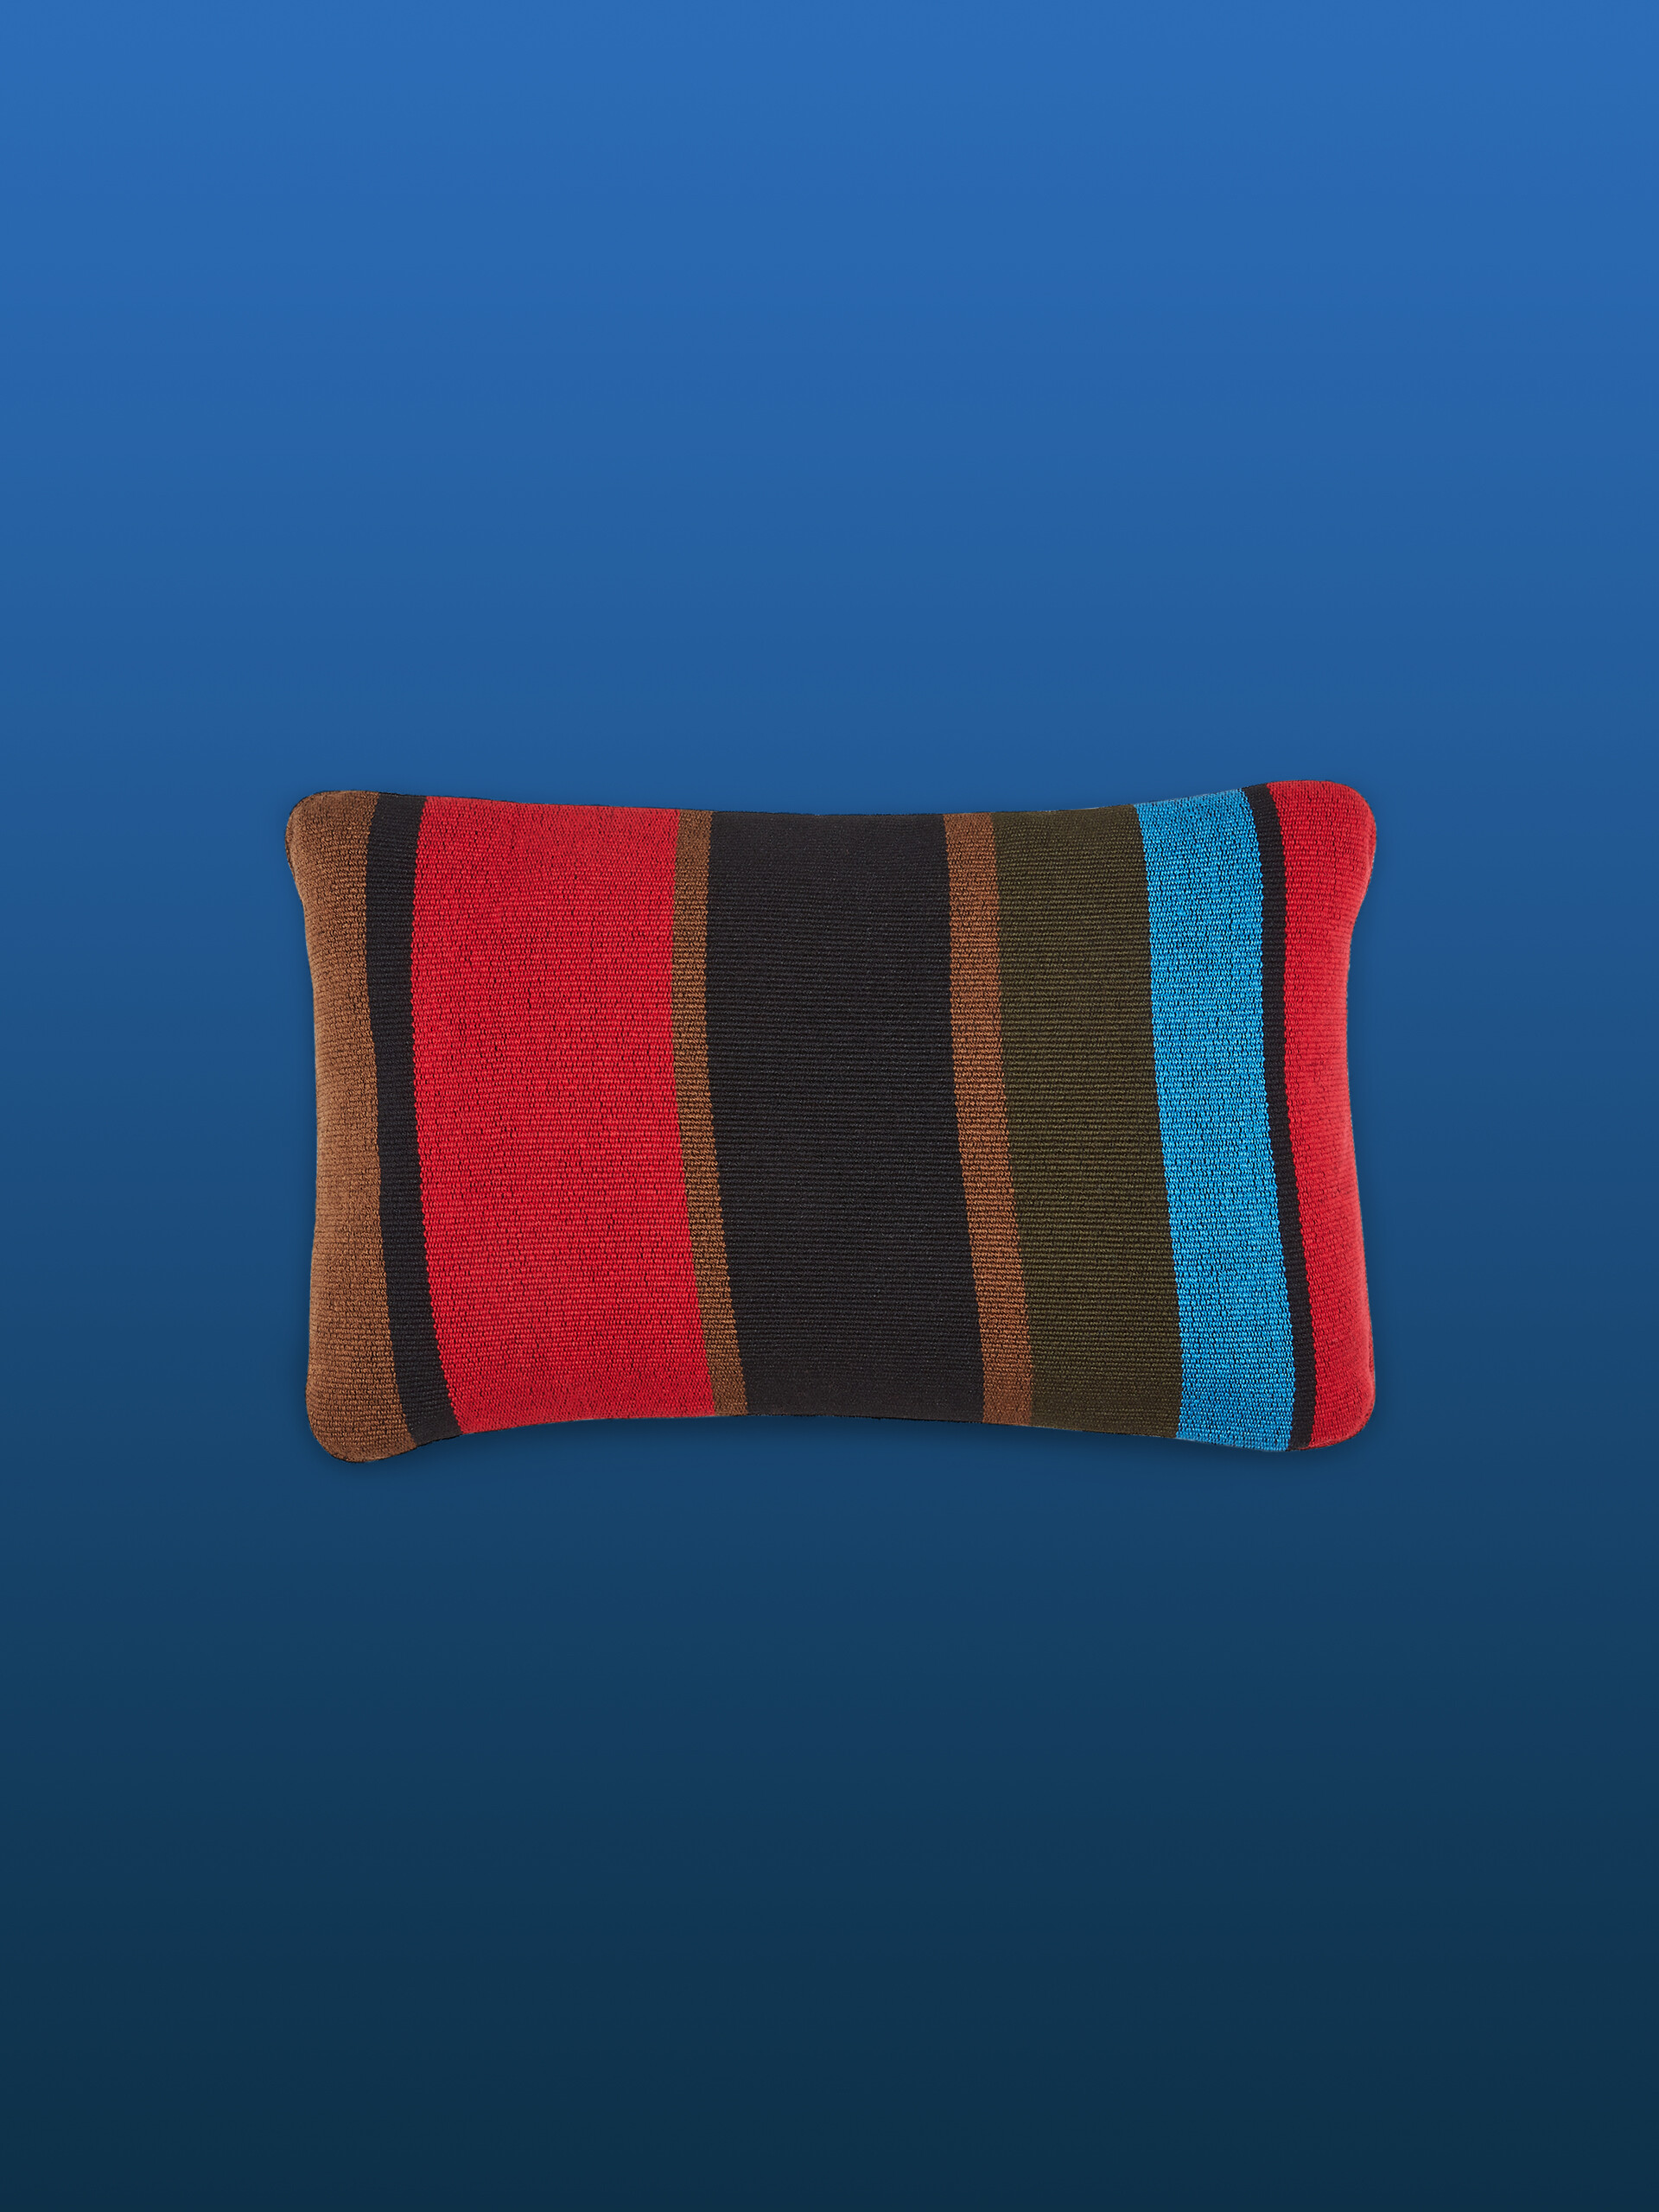 Fodera per cuscino rettangolare MARNI MARKET in poliestere marrone nero e rosso - Arredamento - Image 1